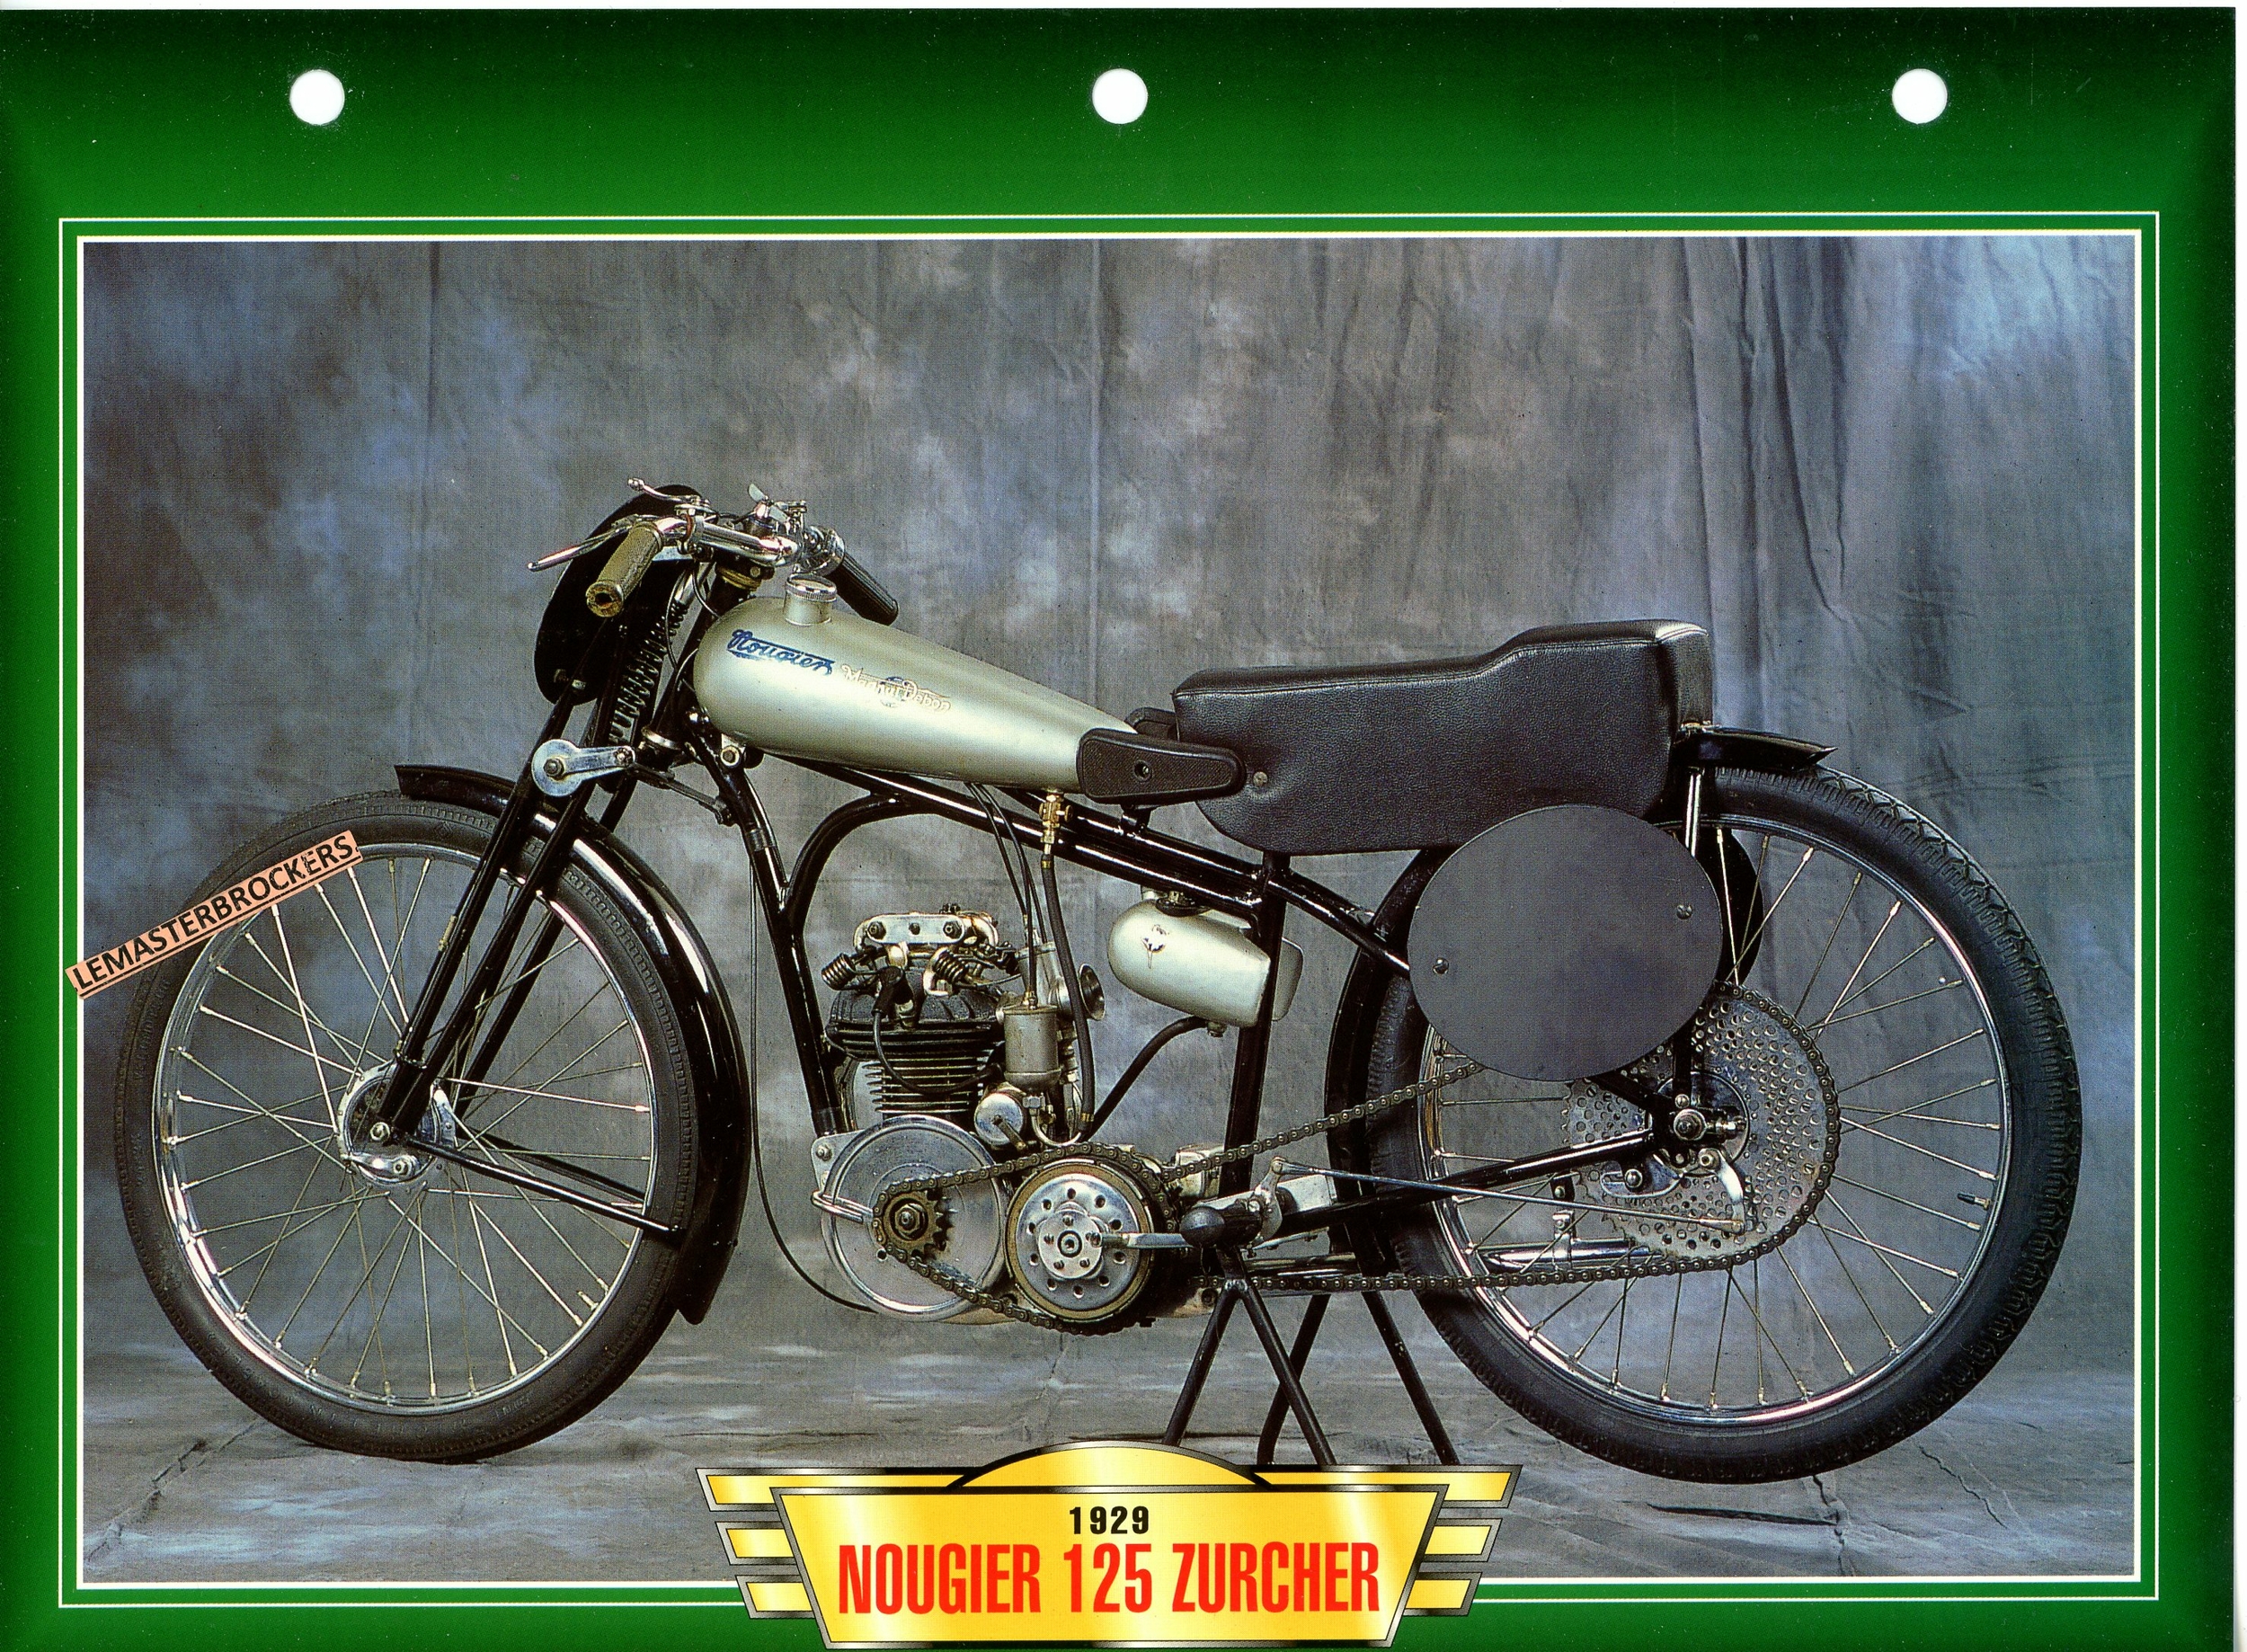 NOUGIER-125-ZURCHER-1929-FICHE-MOTO-ATLAS-ÉDITION-LEMASTERBROCKERS